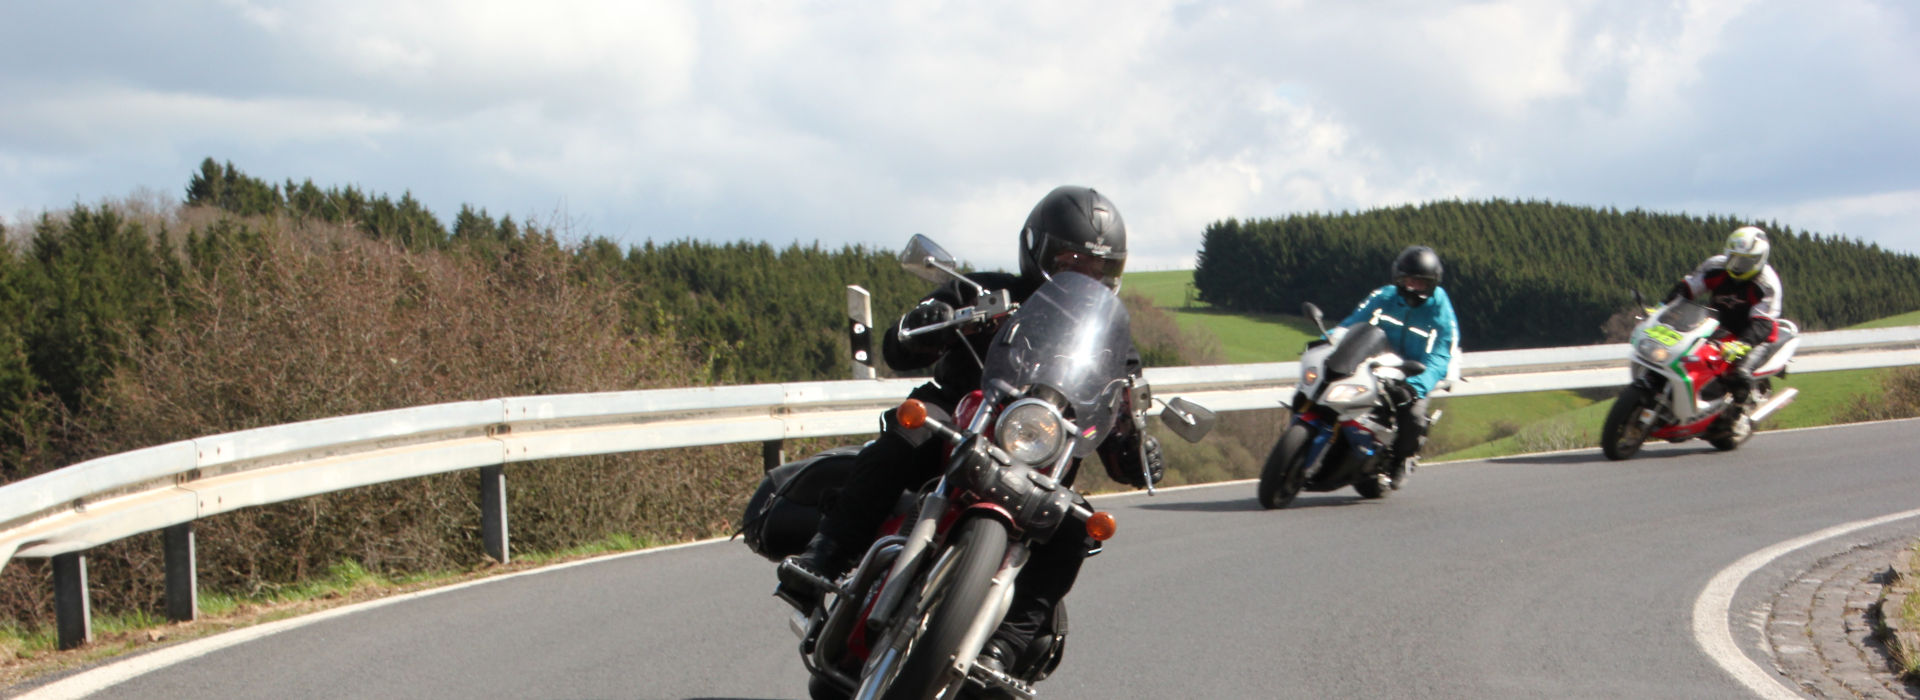 Motorrijschool Motorrijbewijspoint Sassenheim motorrijlessen